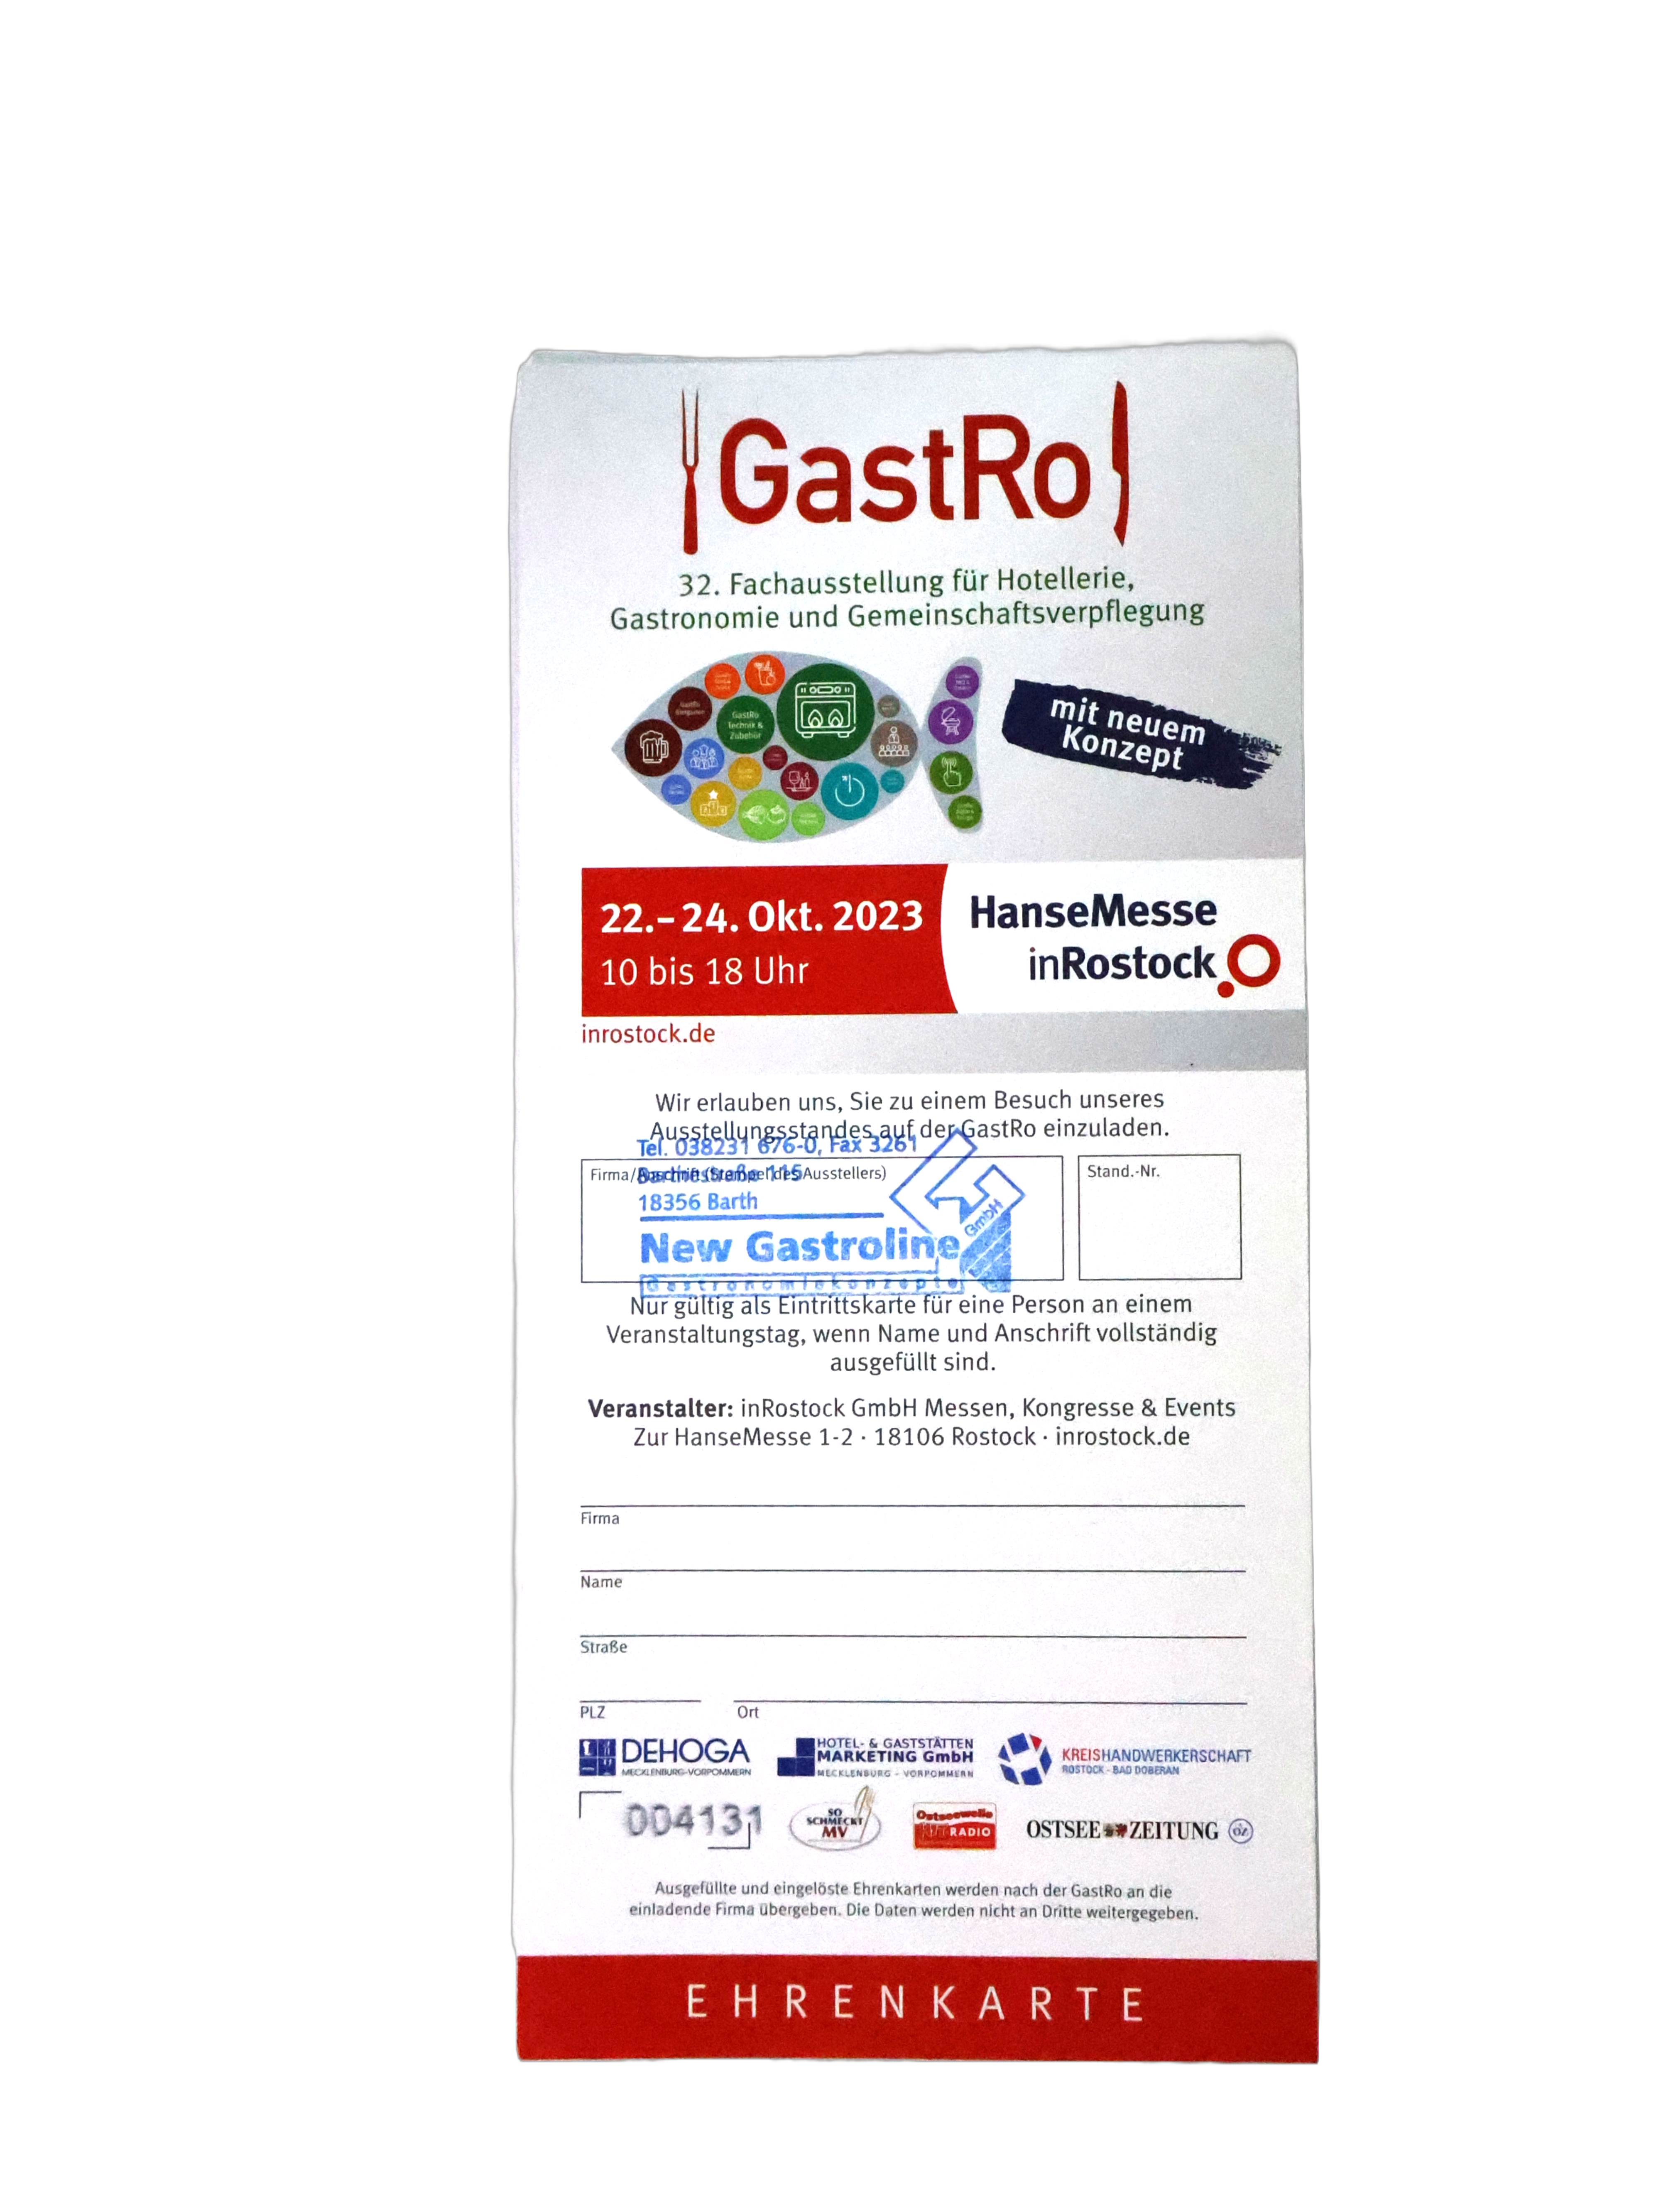 Ehrenkarte der GastRo Fachmesse in Rostock.